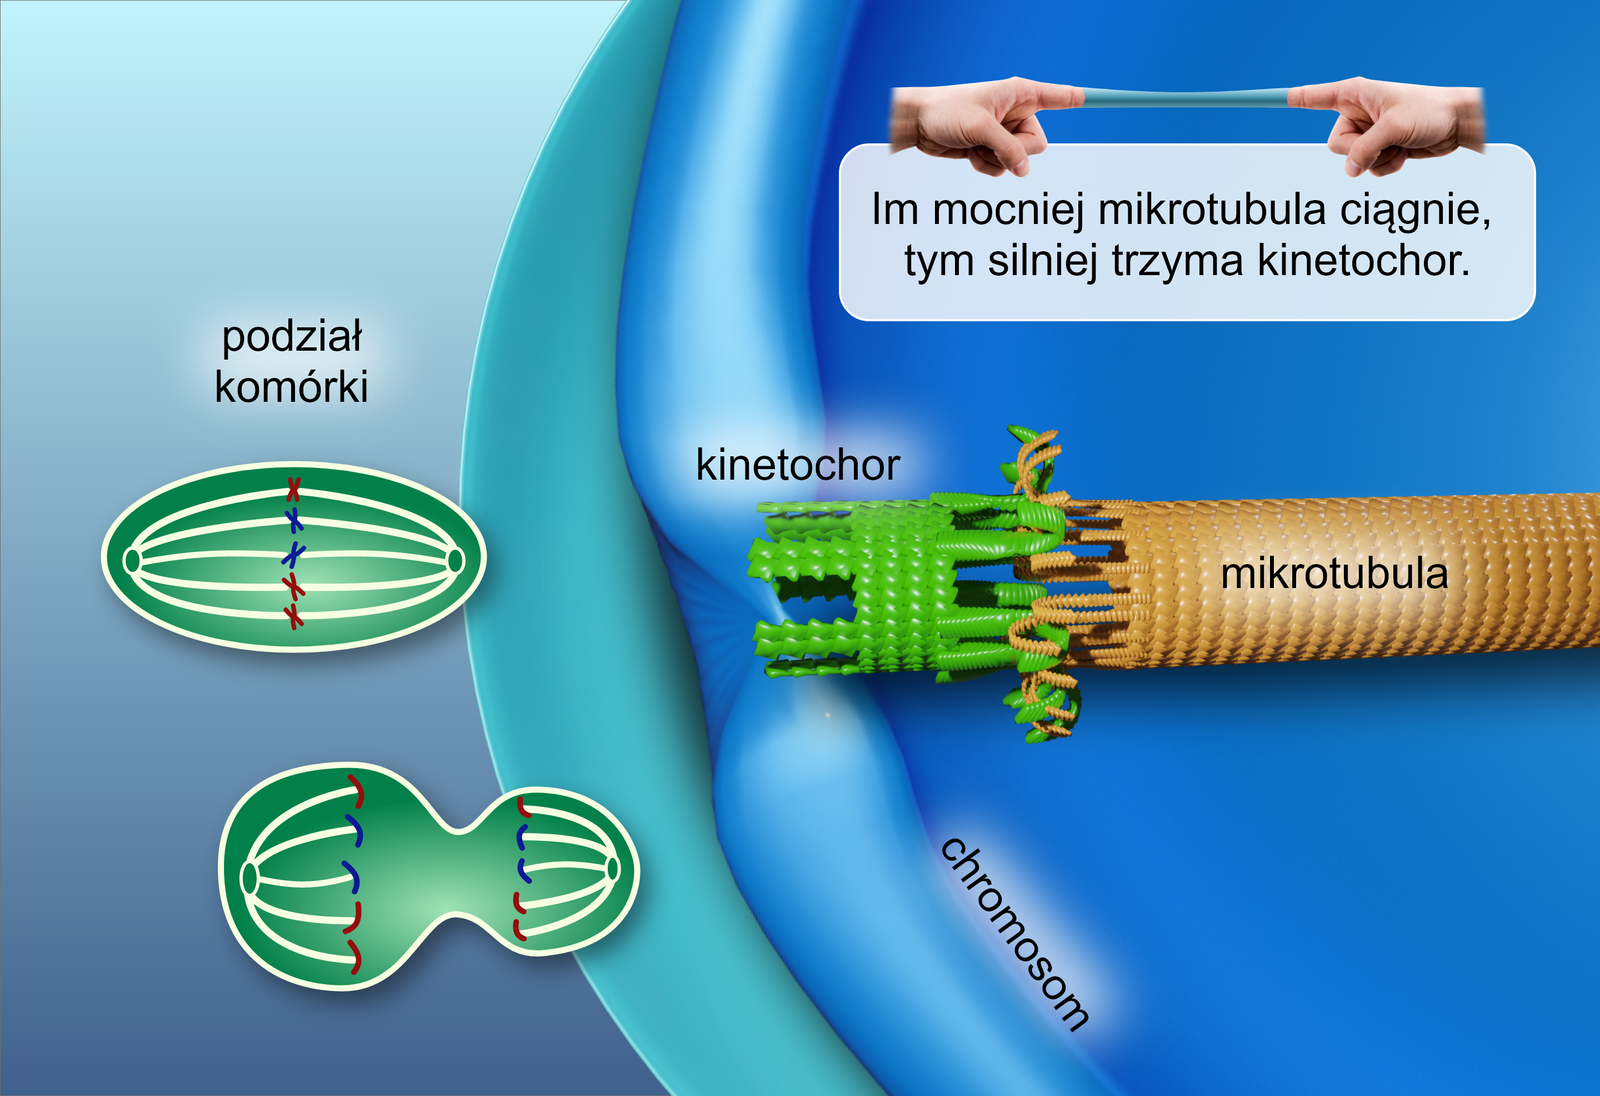 Grafika przedstawia mikrotubule o cylindrycznym kształcie, złączoną z kinetochorem. Kinetochor ma formę pierścienia, z jednej strony połączonego przy pomocy wielu drobnych haczyków z mikrotubulą, natomiast z drugiej ze ścianą chromosomu. Nad nimi znajduje się rysunek przedstawiający parę dłoni, których palce wskazujące uwięzione są w niewielkiej rurce – chińskiej pułapce na palce. Pod nimi znajduje się komentarz: Im mocniej mikrotubula ciągnie, tym silniej trzyma się kinetochor. Na lewo od głównej część grafiki upieszczono schematycznie przedstawione komórki, ukazujące etap jej podziału, w której chromatydy rozchodzą się na dwa bieguny. 